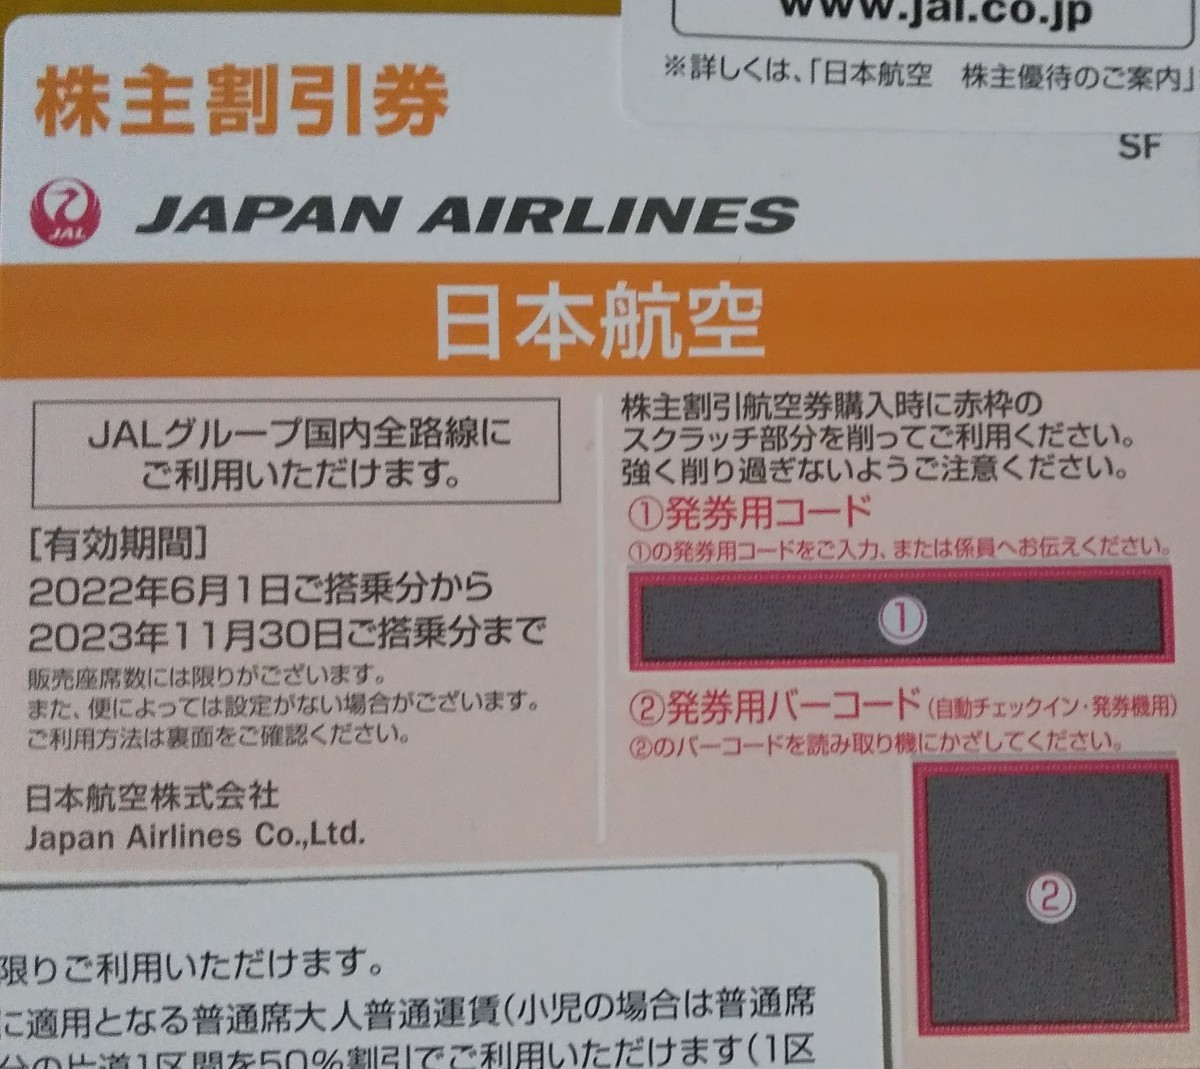 JAL 株主優待株主割引券(1枚) 50%割引券有効期限:2023/11/30 郵送対応